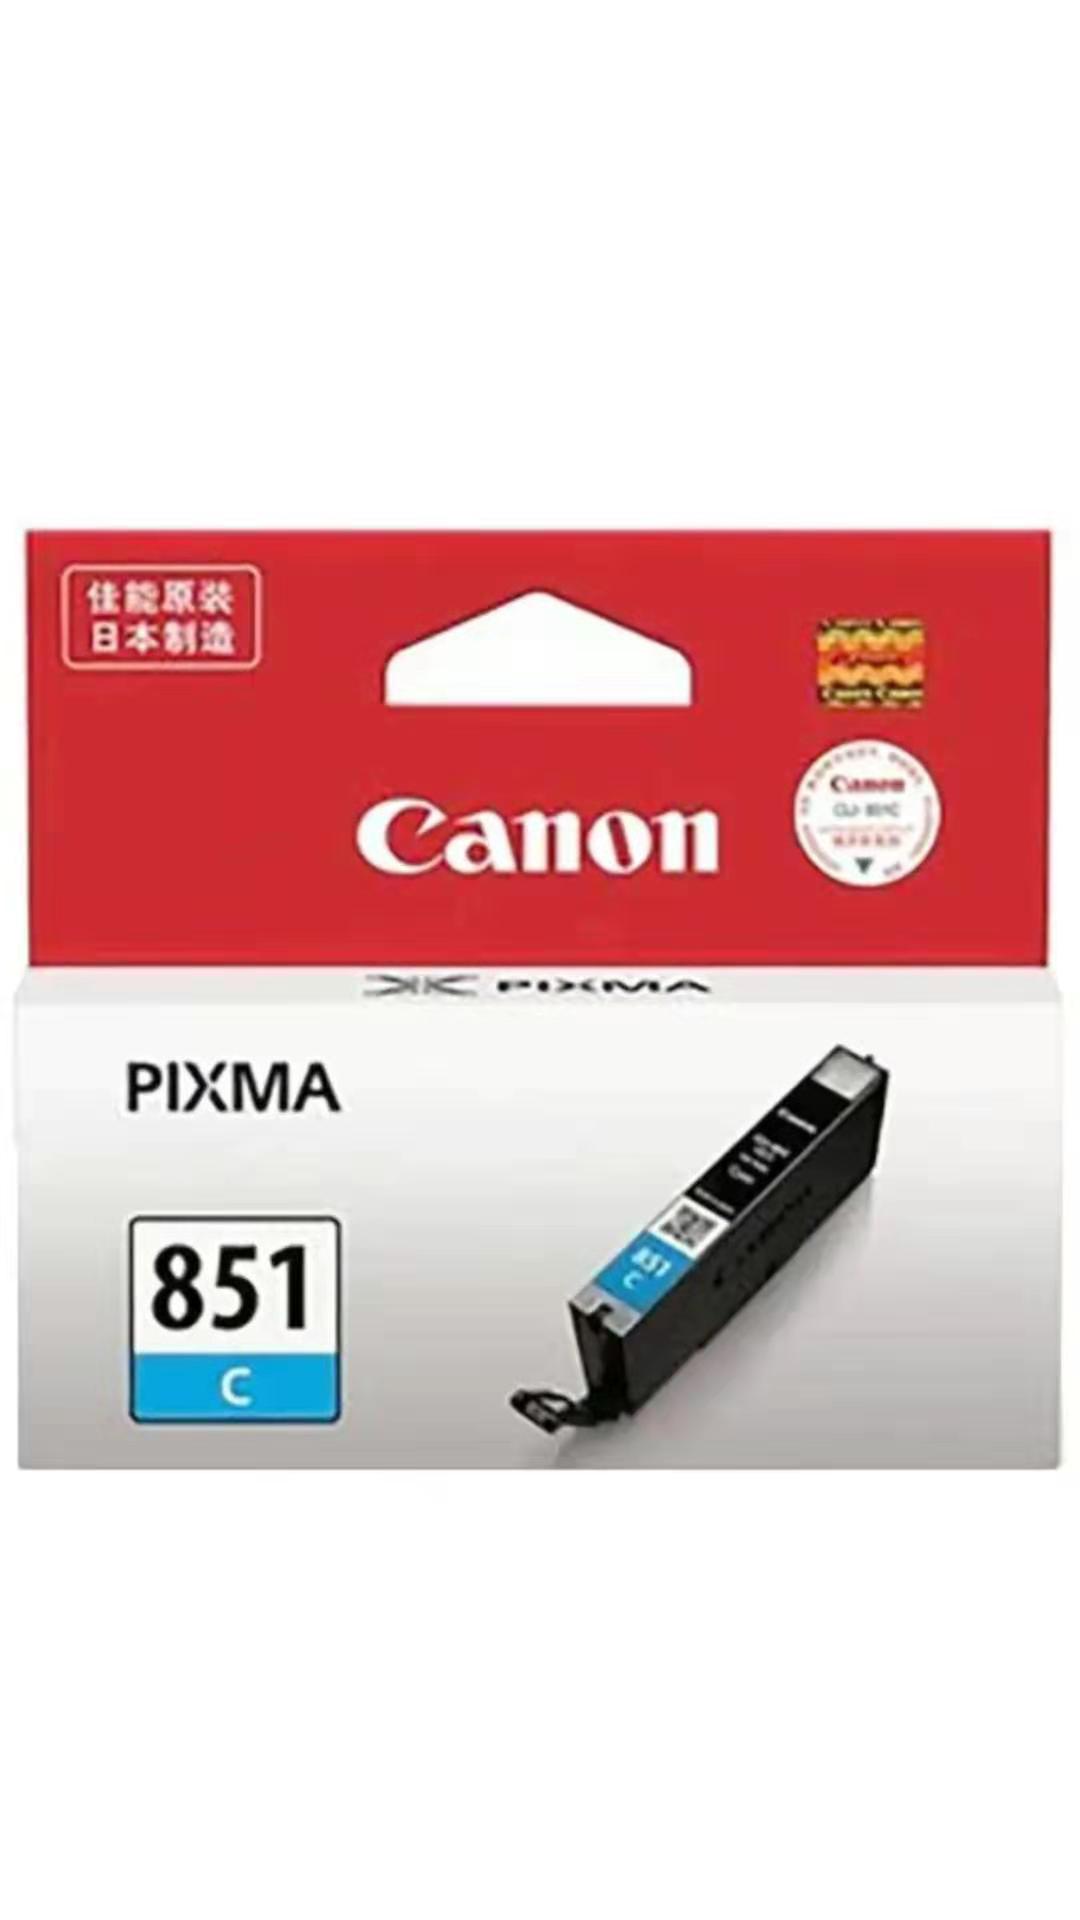 佳能CLI-851C青色墨盒适用于佳能7280彩色打印机_http://www.zhongqingyang.cn/img/images/C201907/1563181146231.jpg